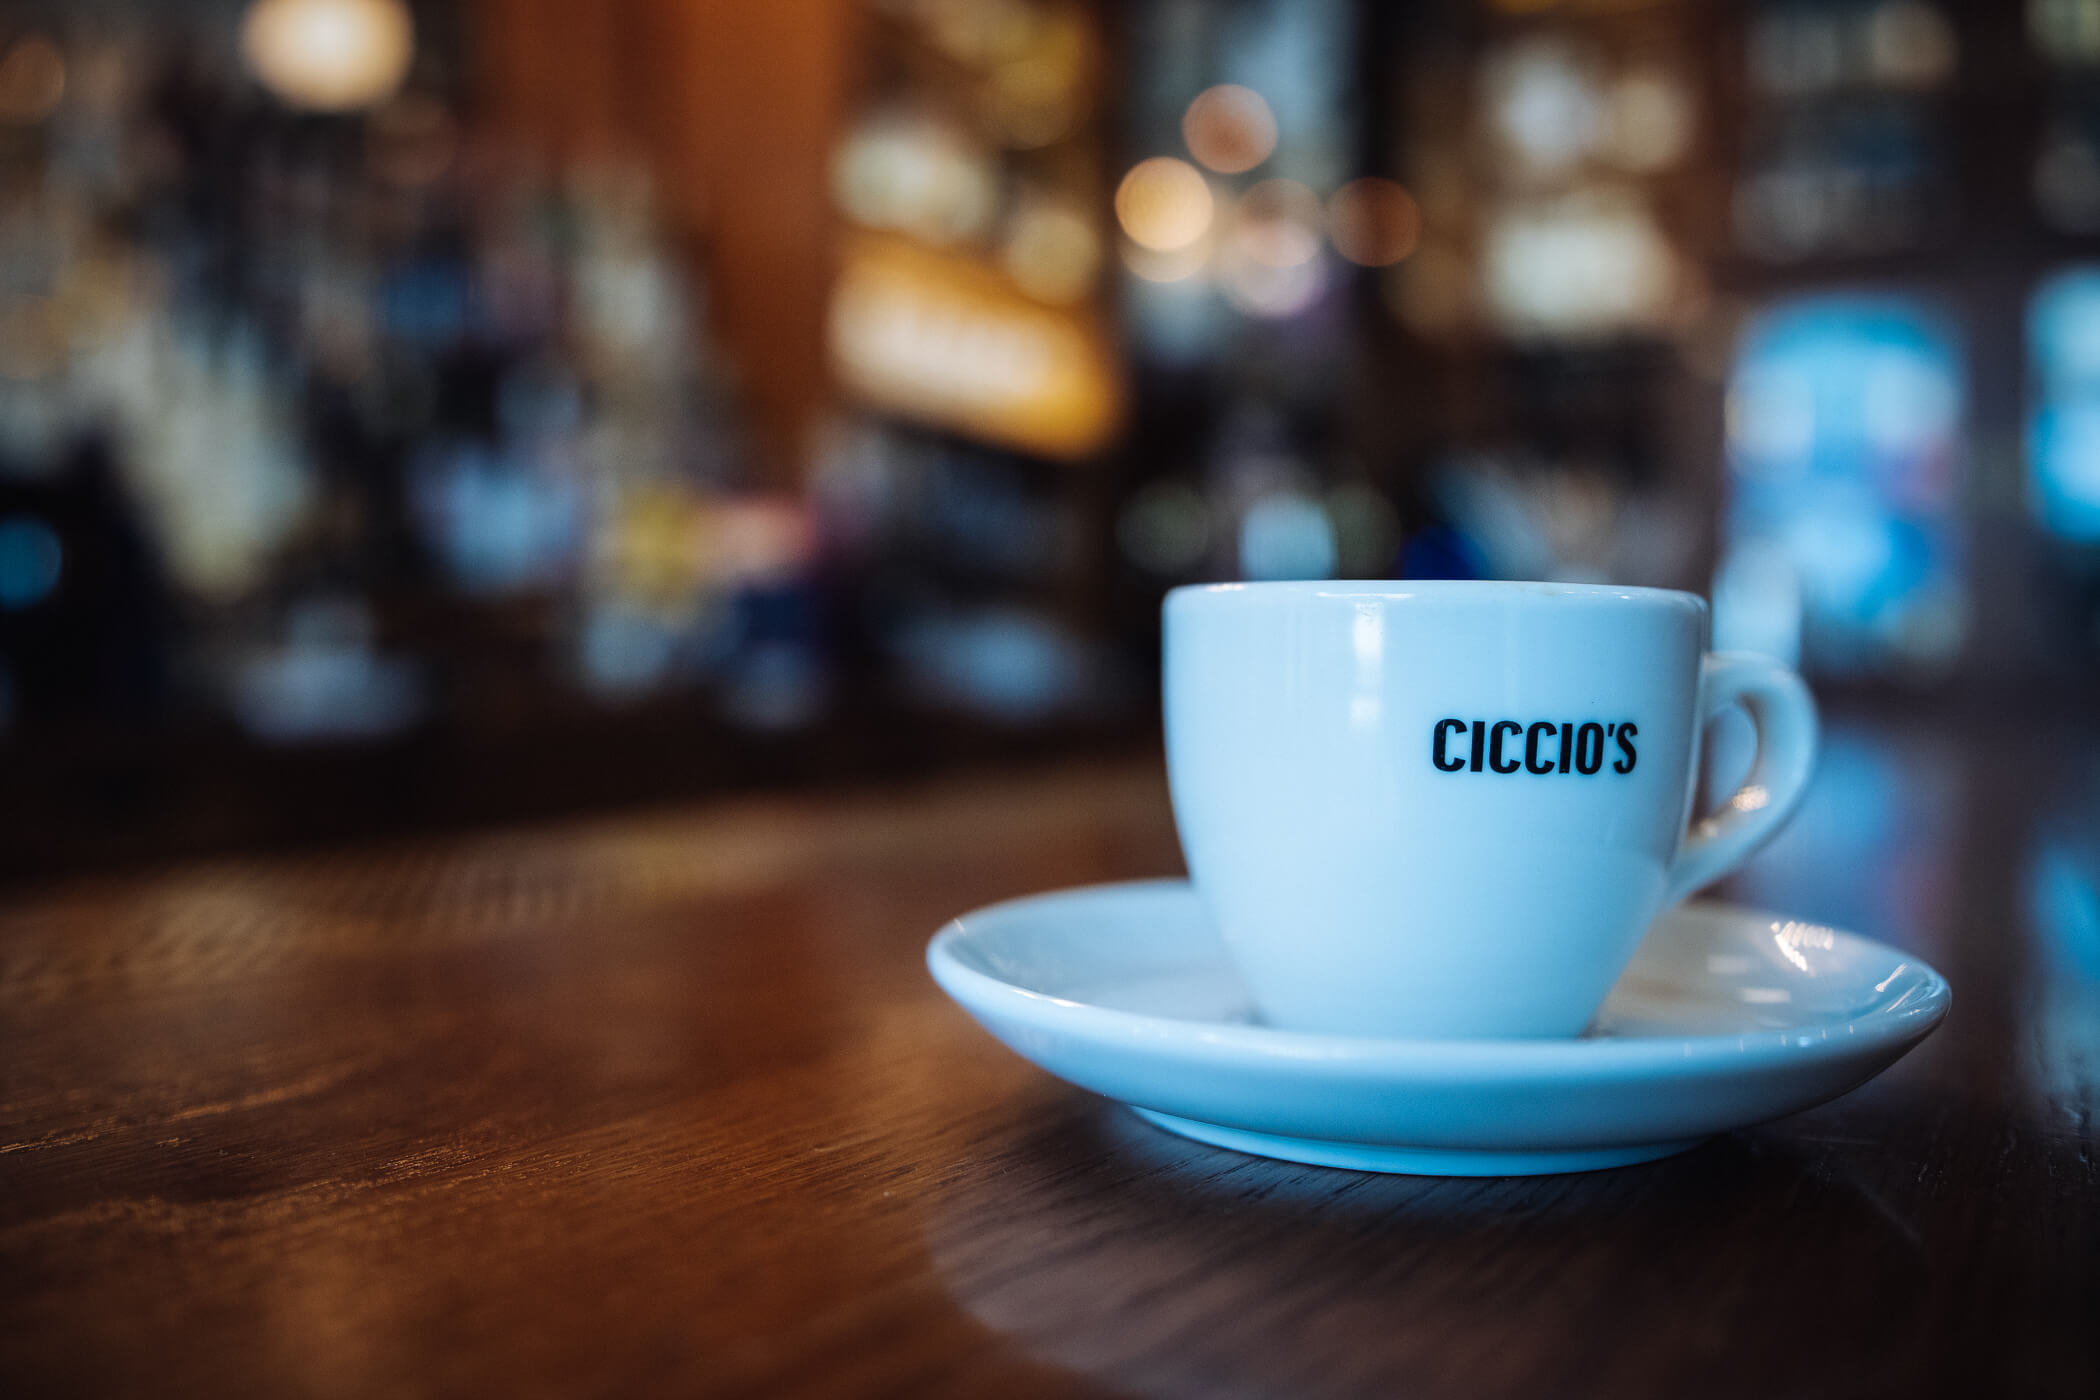 Ciccios-Espresso-Café-trivec